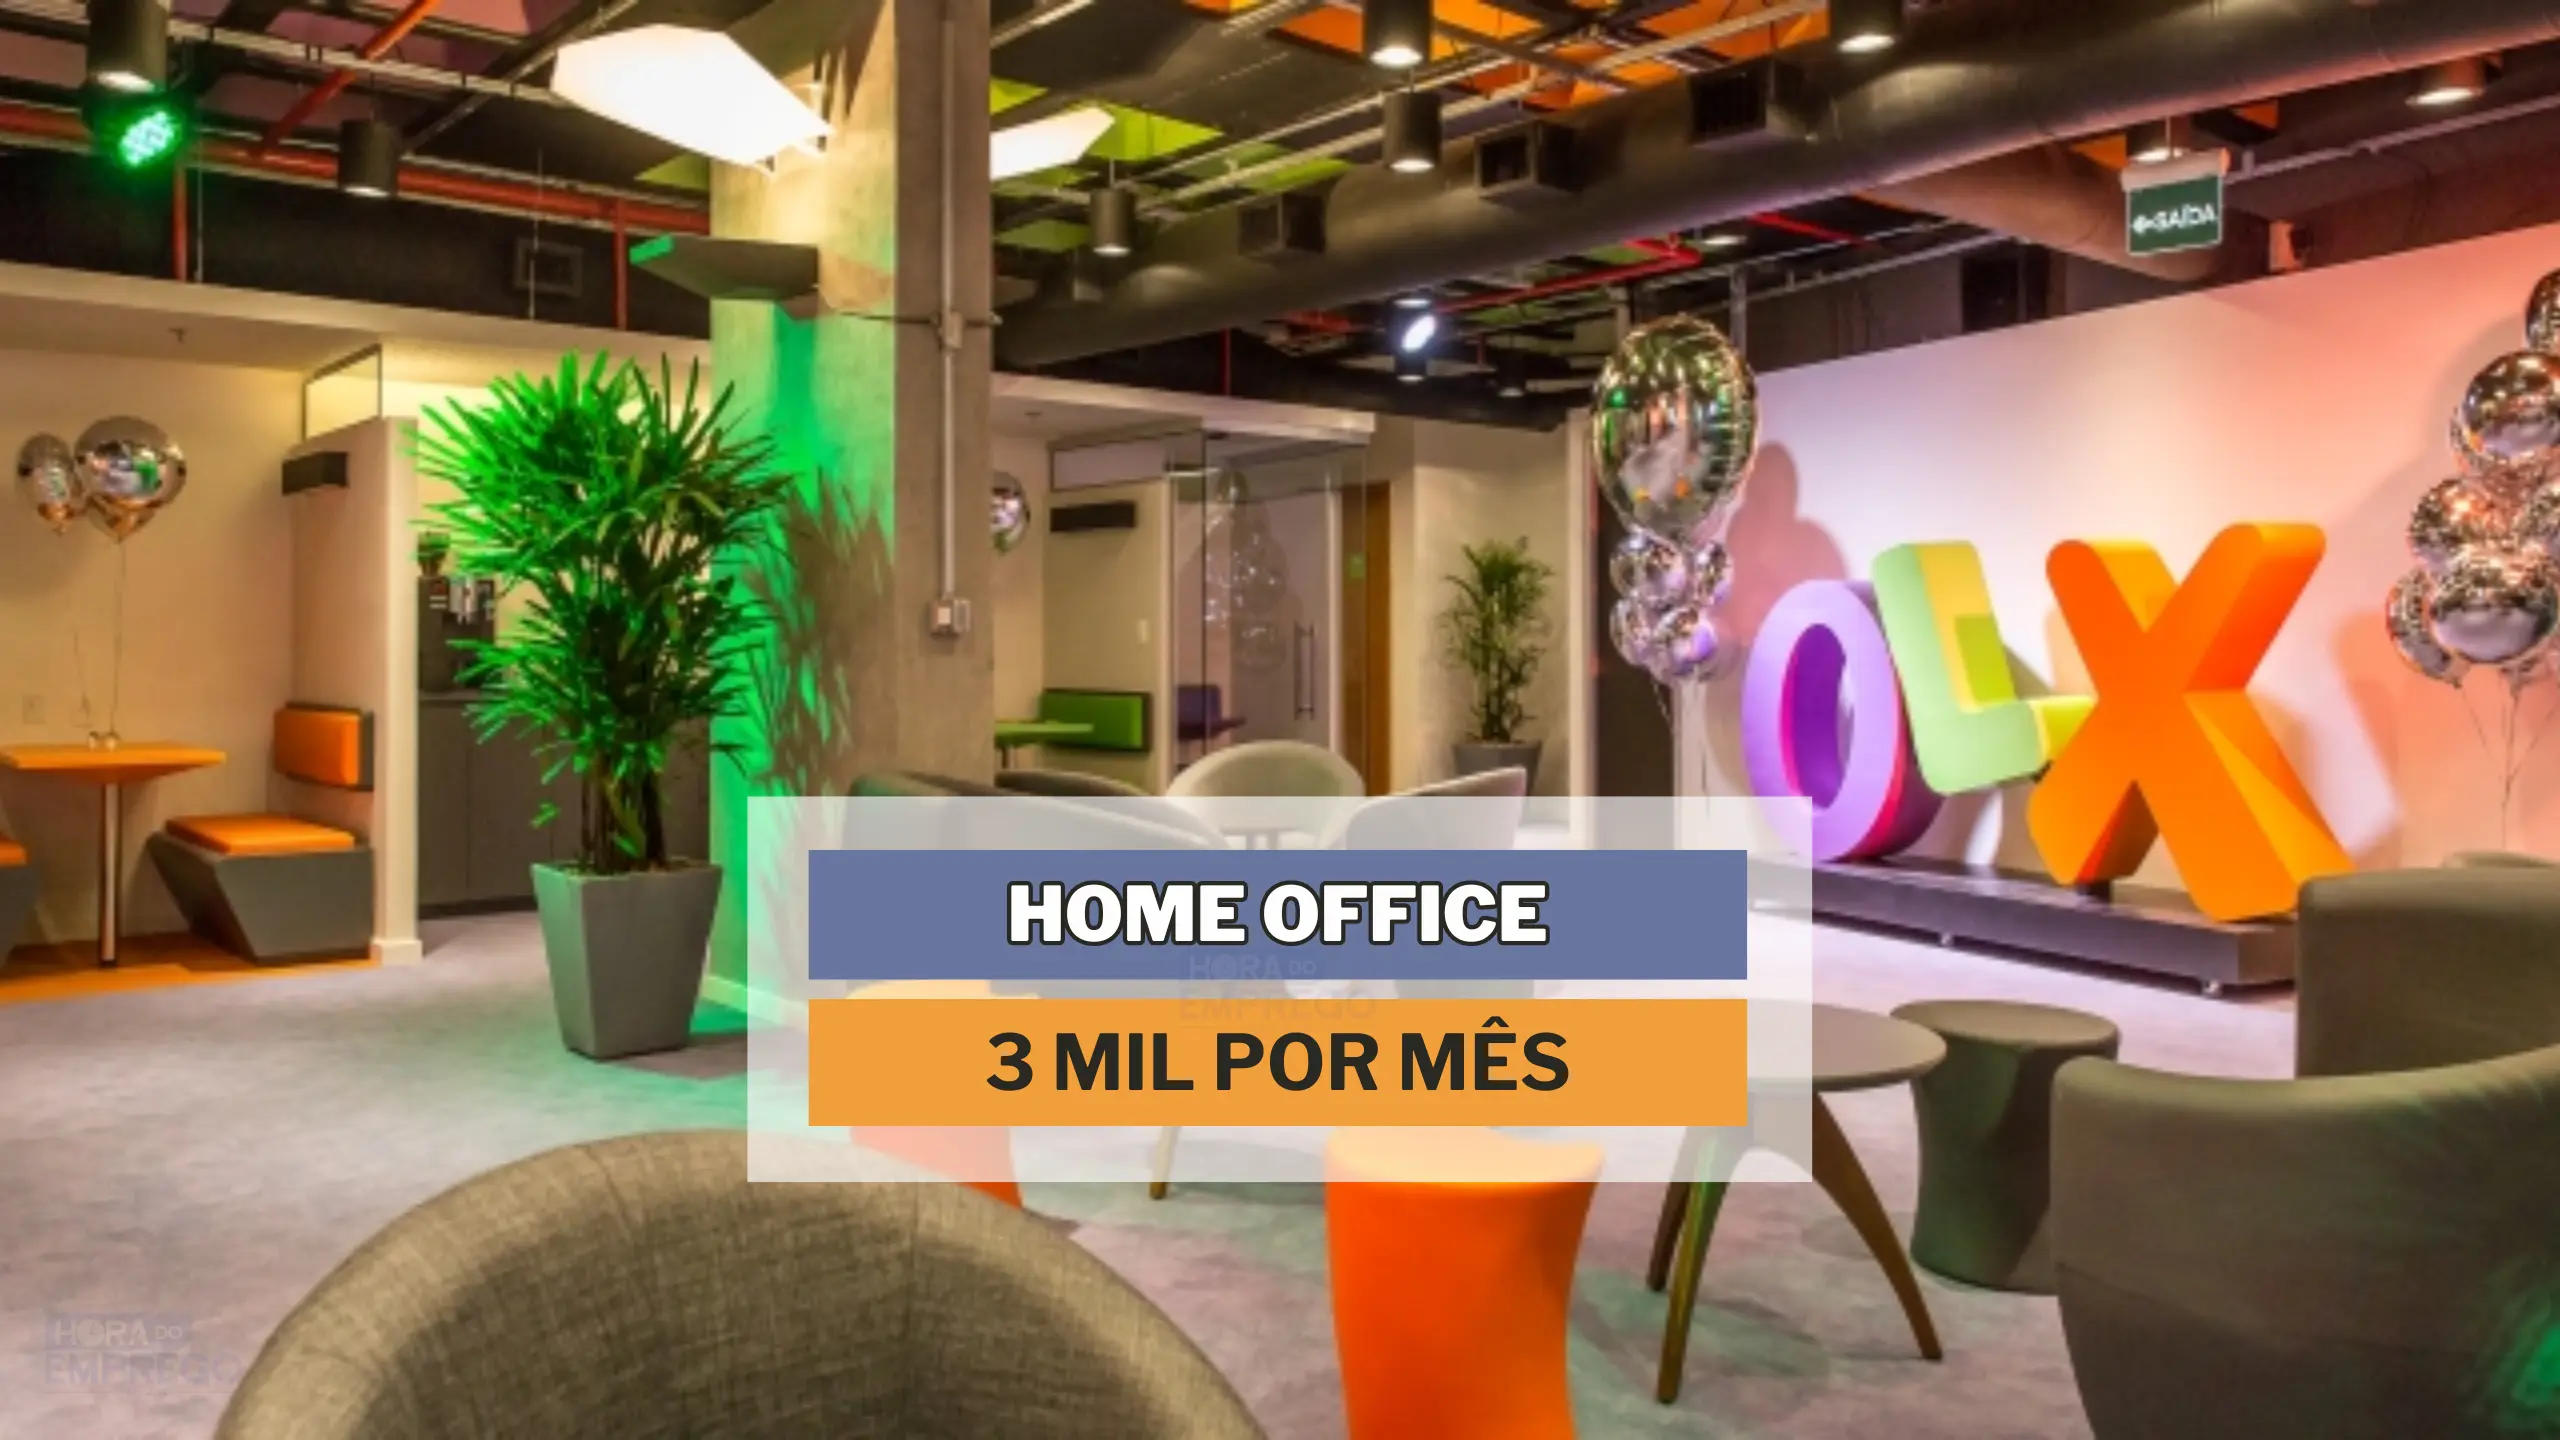 Grupo OLX anuncia vaga 100% HOME OFFICE para Atendimento ao Cliente com salário médio de até 3 MIL por mês